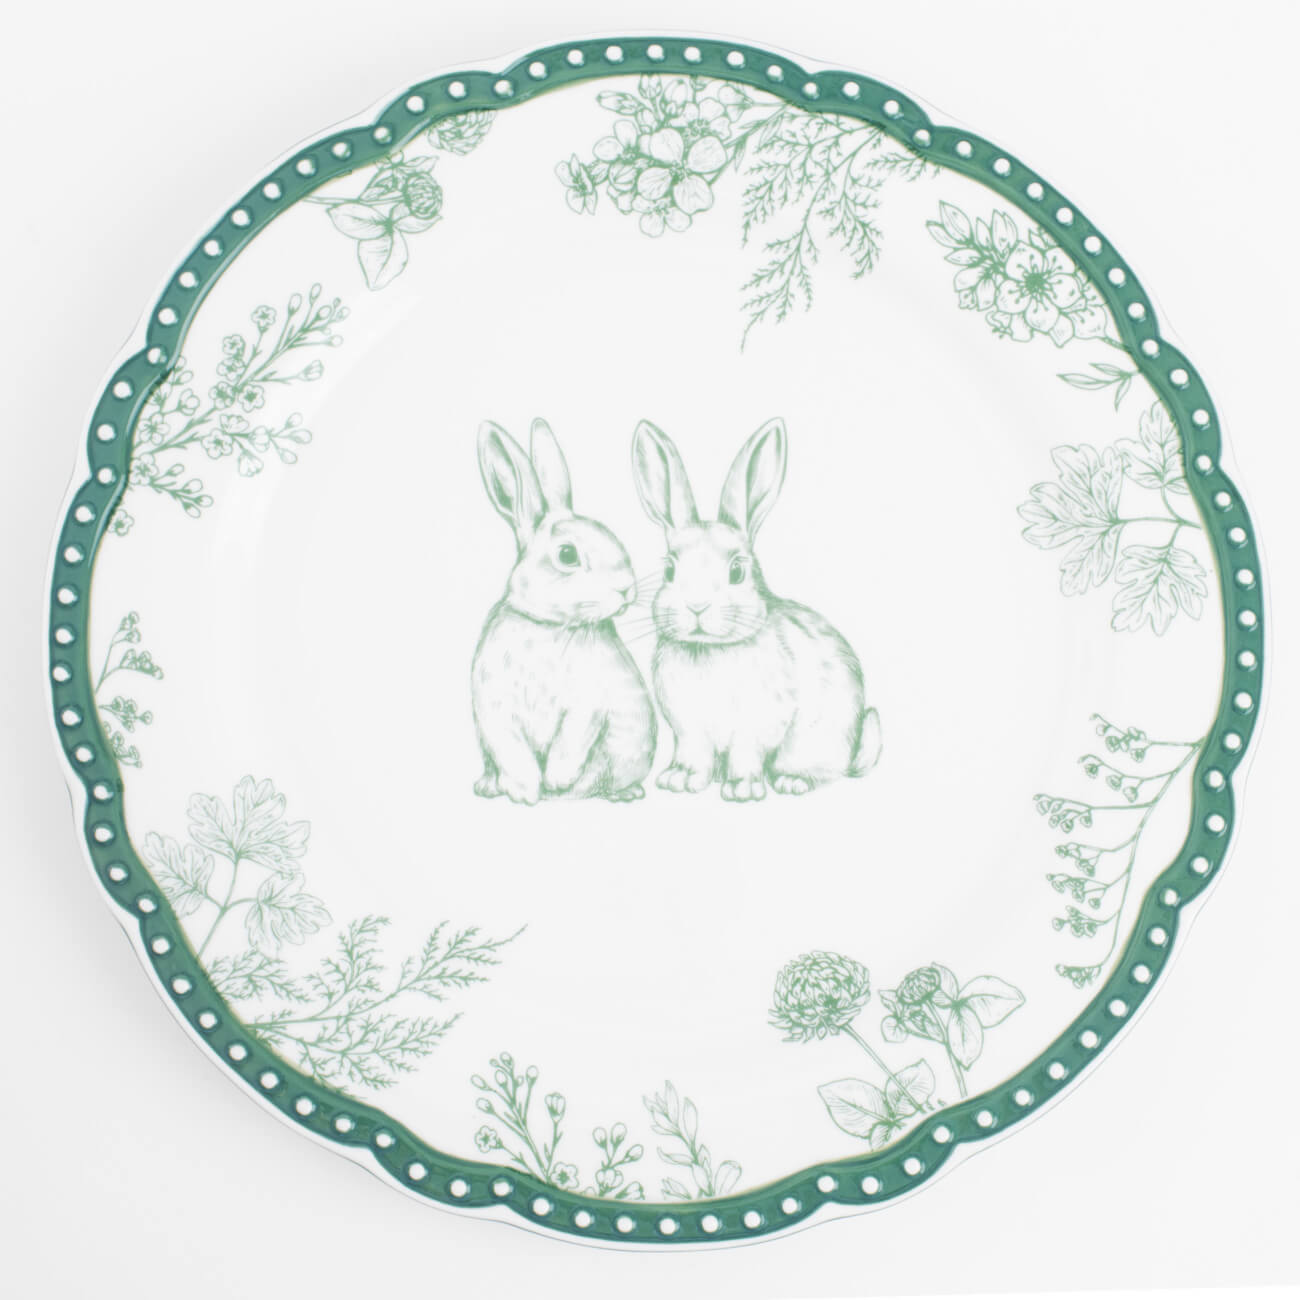 Тарелка обеденная, 27 см, керамика, бело-зеленая, Кролики и цветы, Easter blooming салфетка под приборы 30x45 см полиэстер прямоугольная белая кролики pure easter